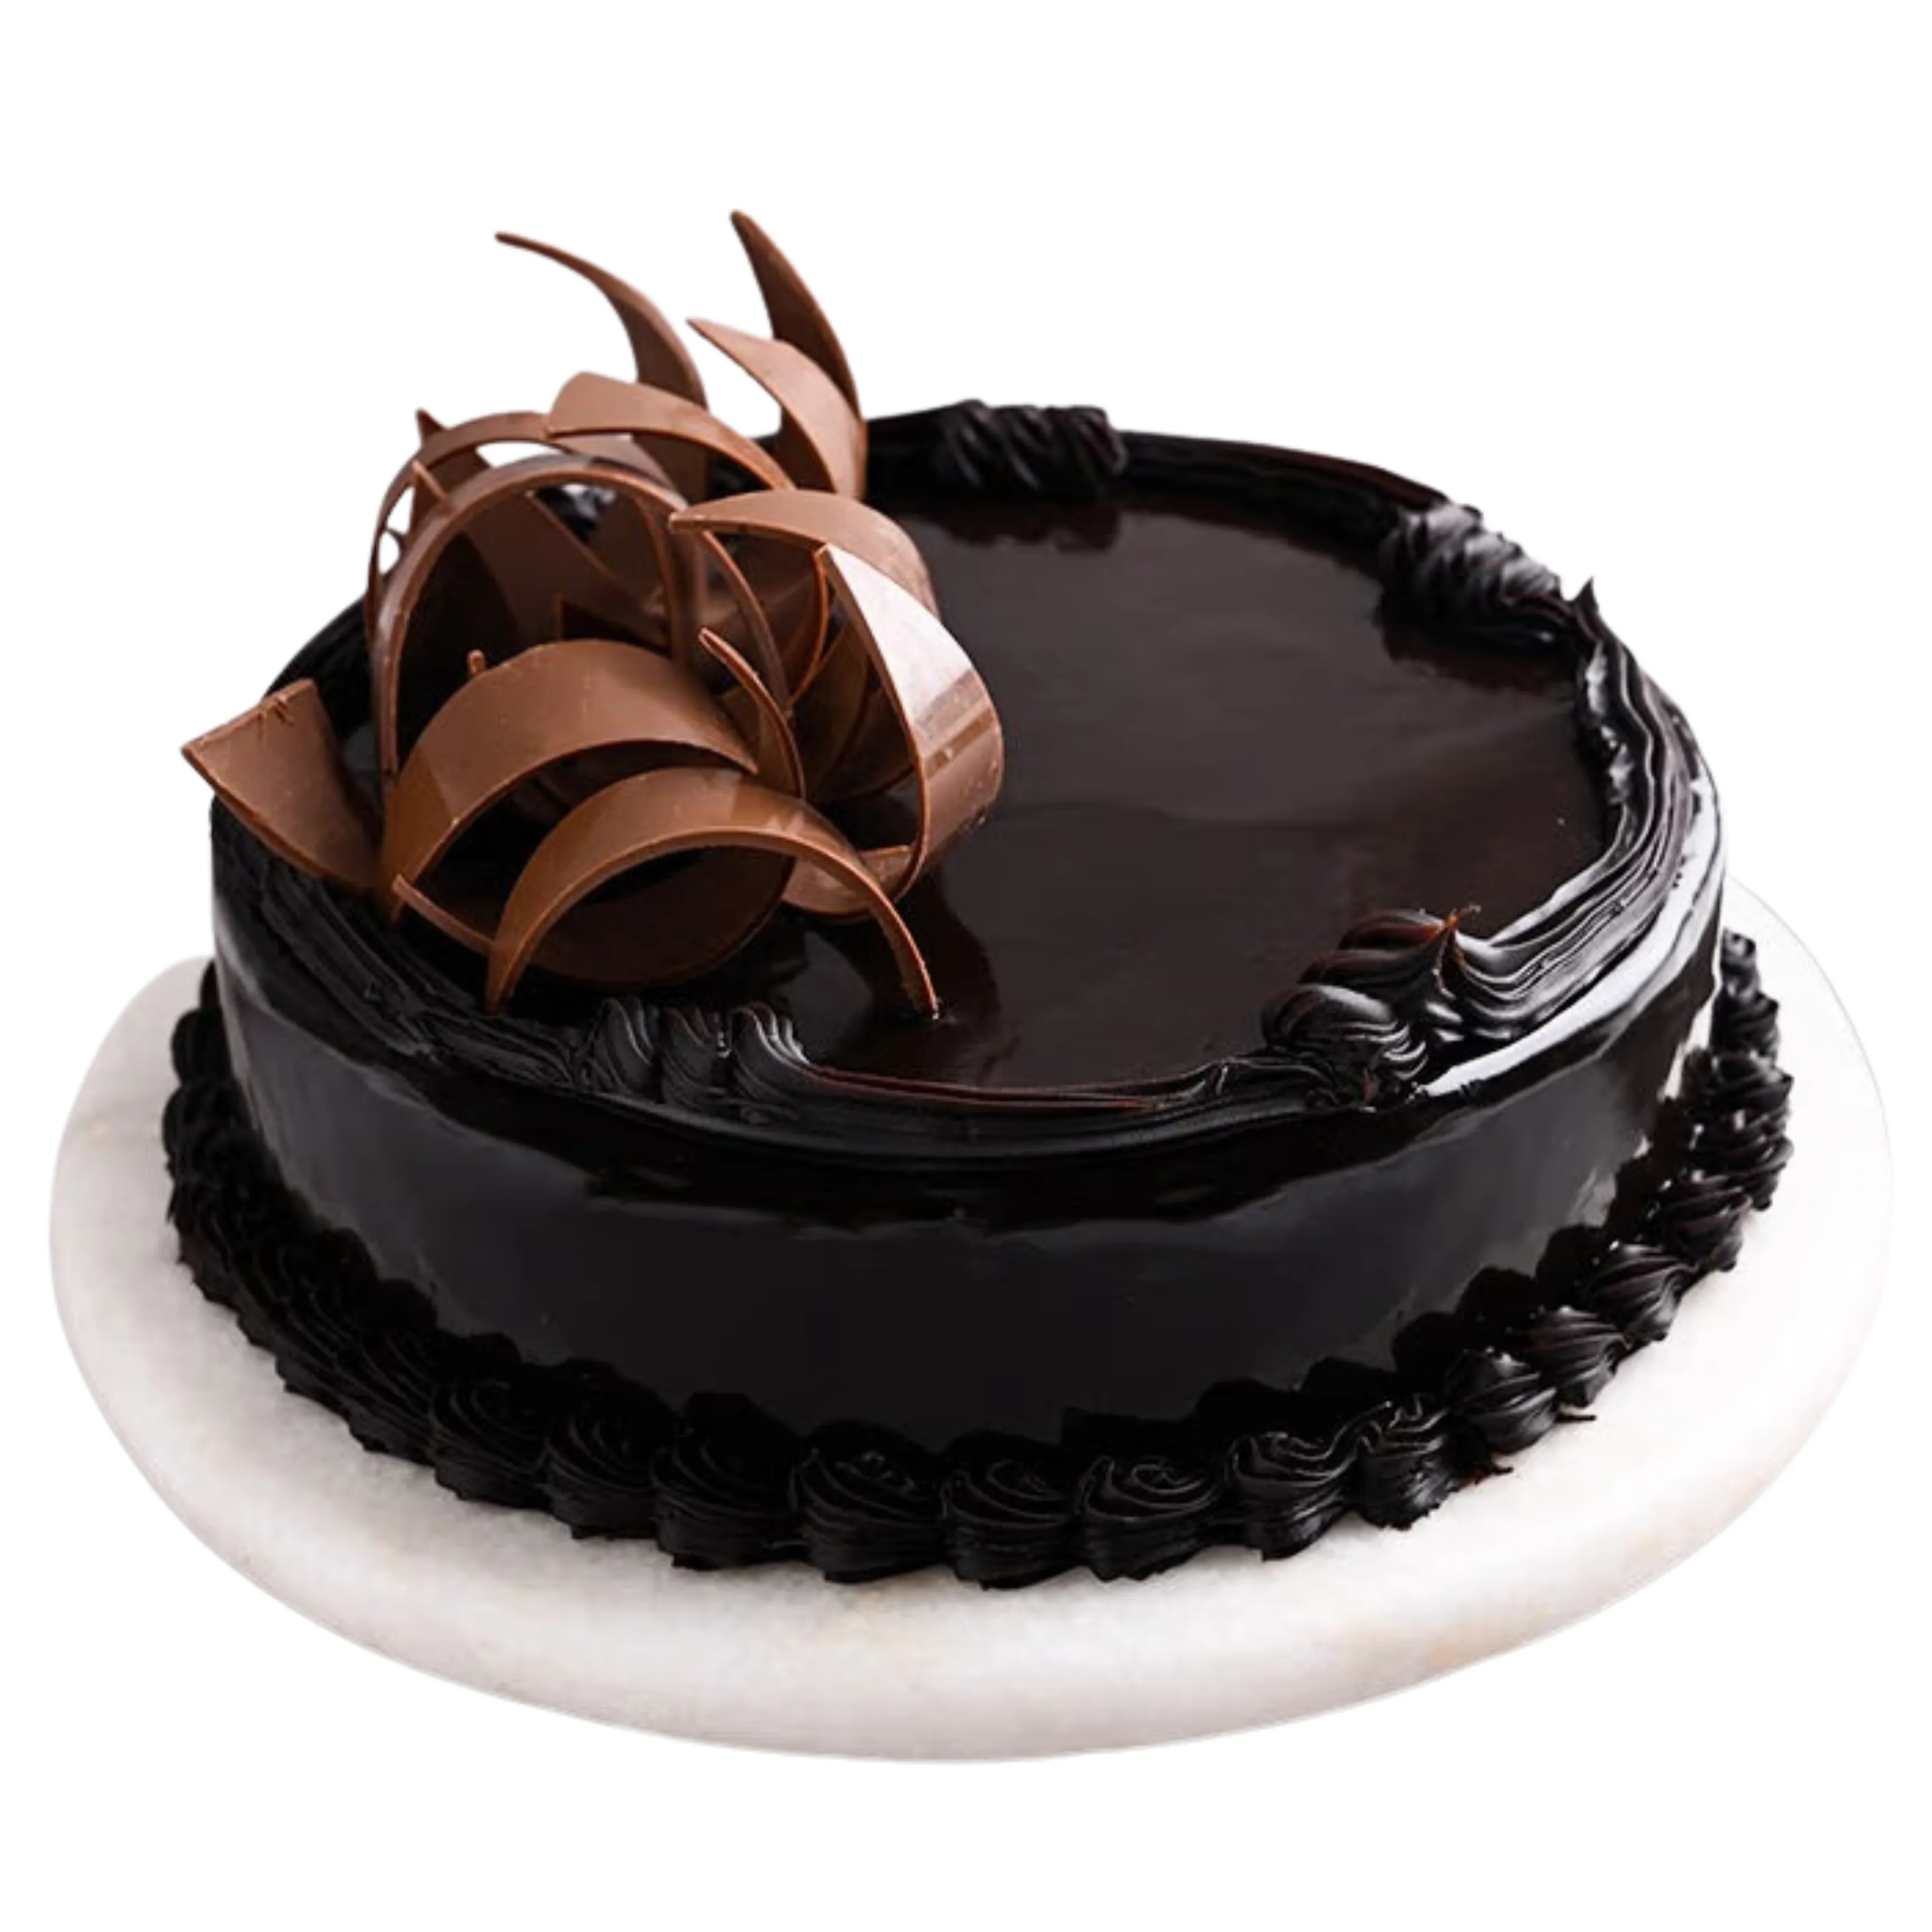 Round Chocolate Truffle Glaze Cake for Anniversary